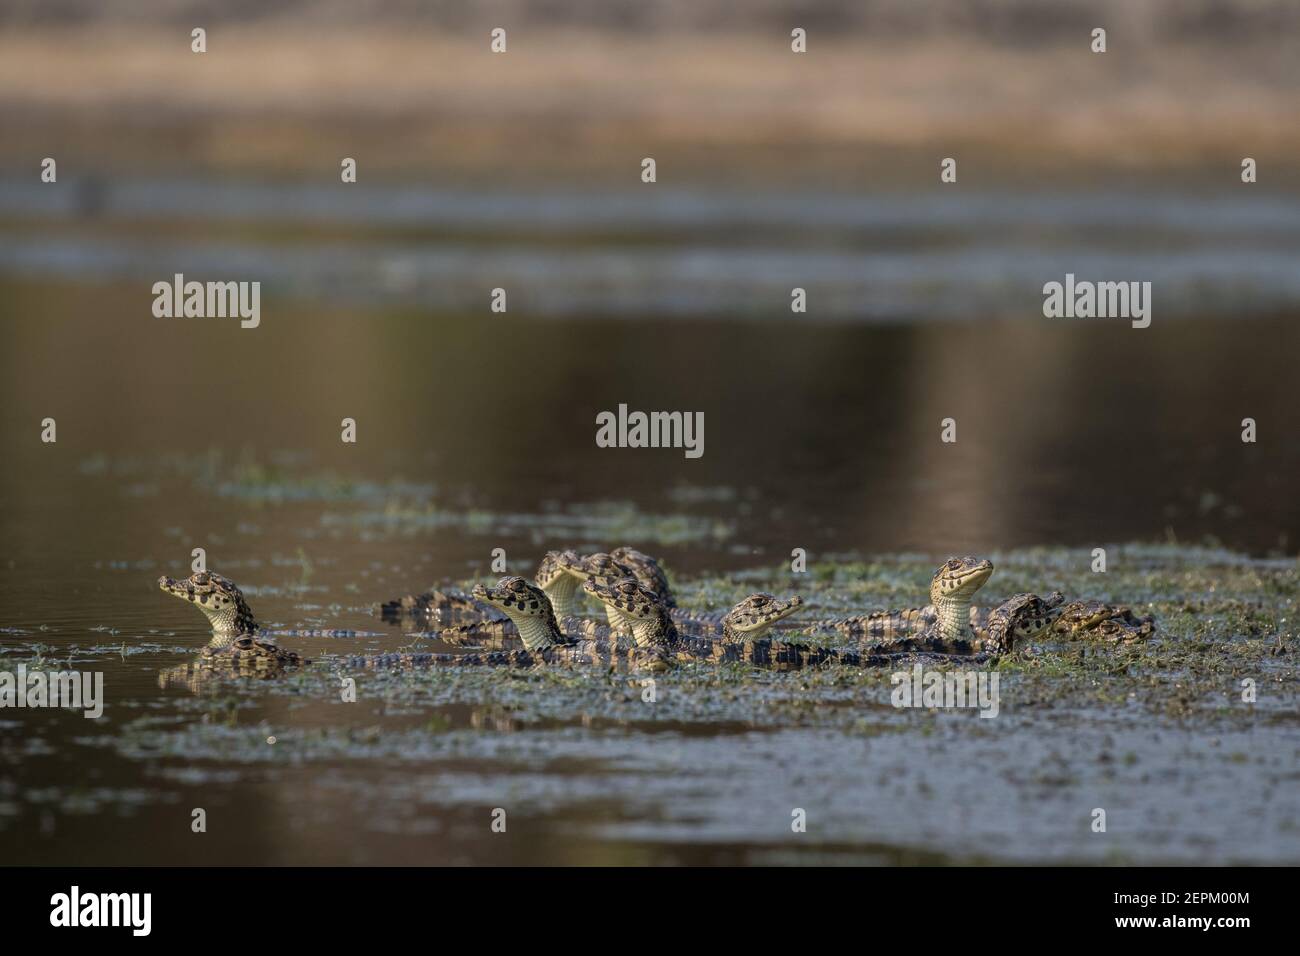 A caiman at Fazenda Barranco Alto, Mato Grosso do Sul, Brazil. Stock Photo